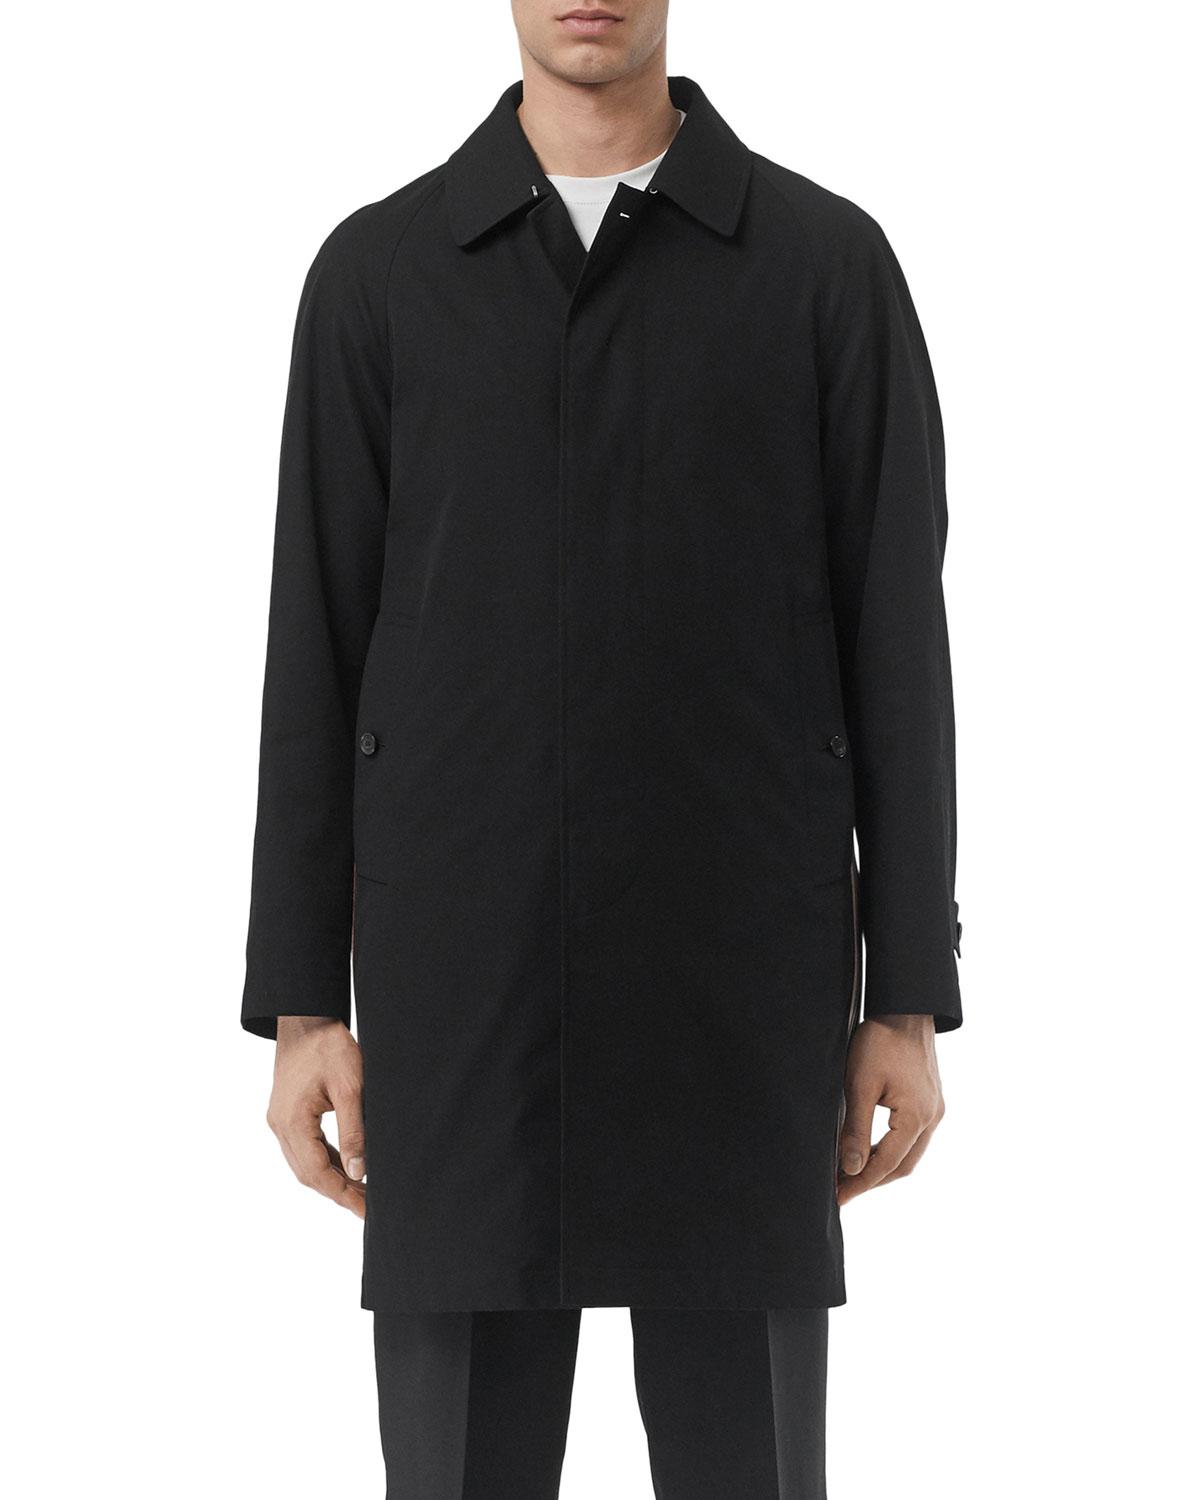 Lyst - Burberry Men's Camden Water-resistant Car Coat in Black for Men